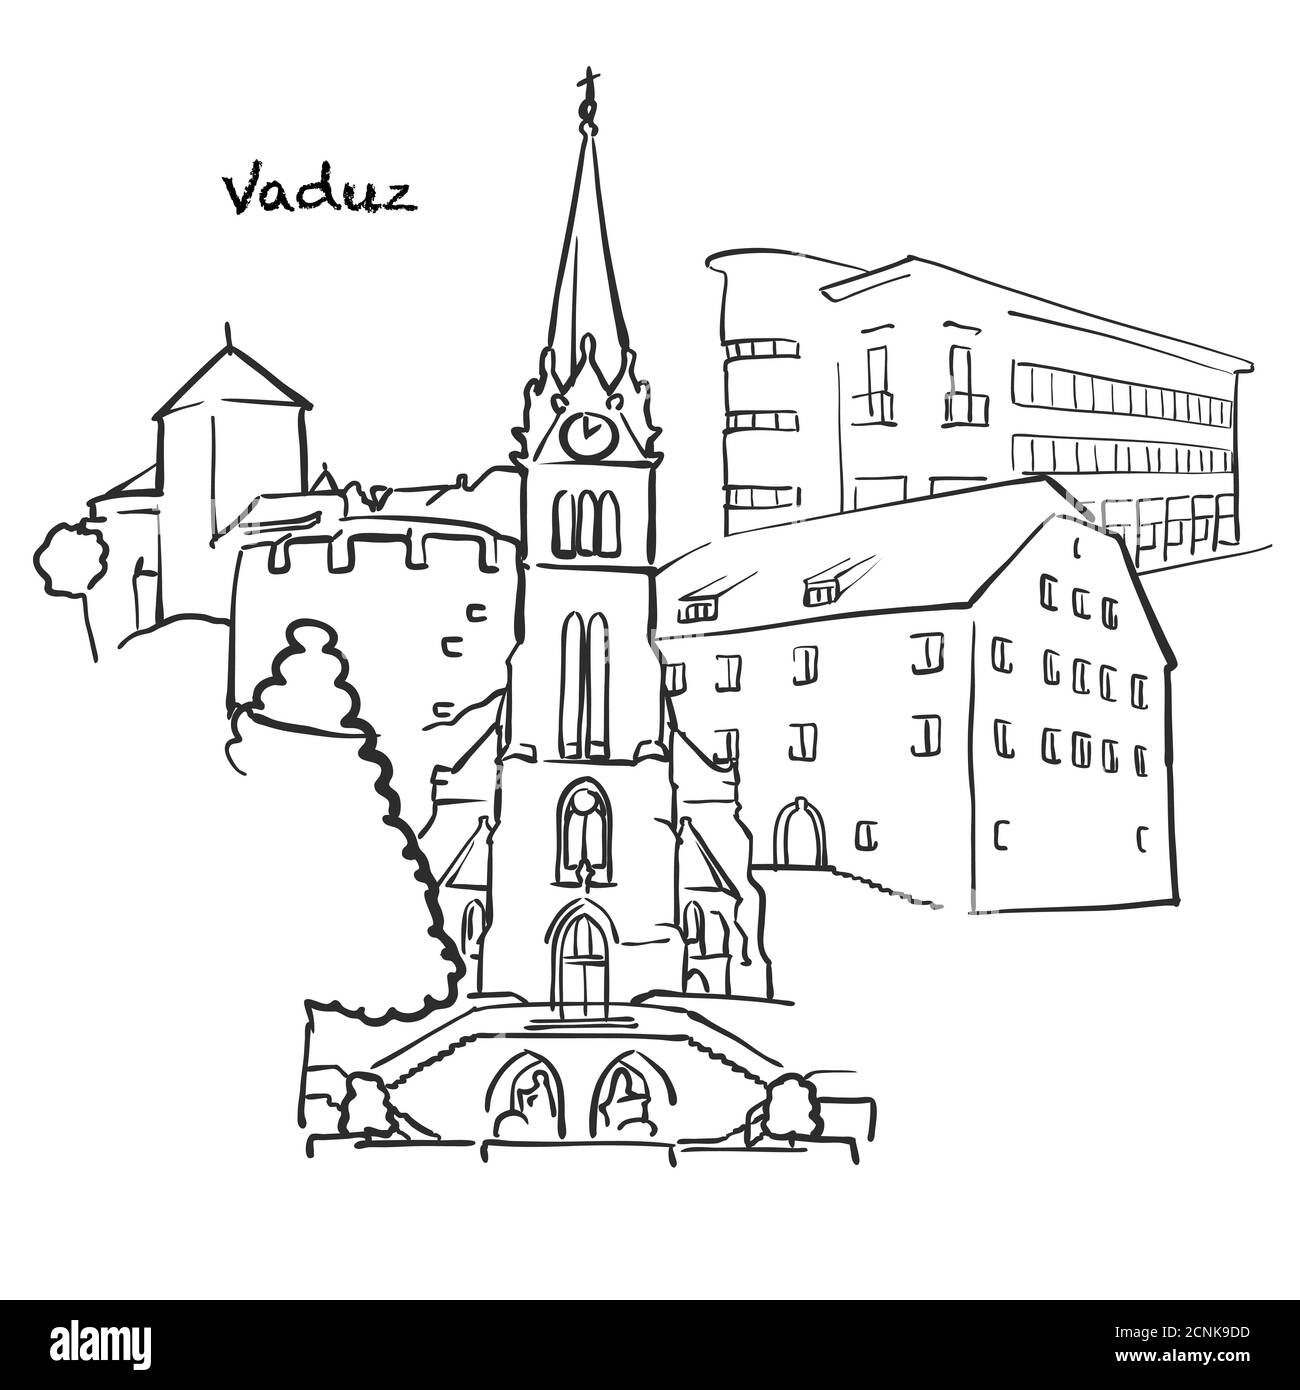 Berühmte Gebäude von Vaduz, Liechtenstein Zusammensetzung. Handgezeichnete schwarz-weiße Vektorgrafik. Gruppierte und bewegliche Objekte. Stock Vektor